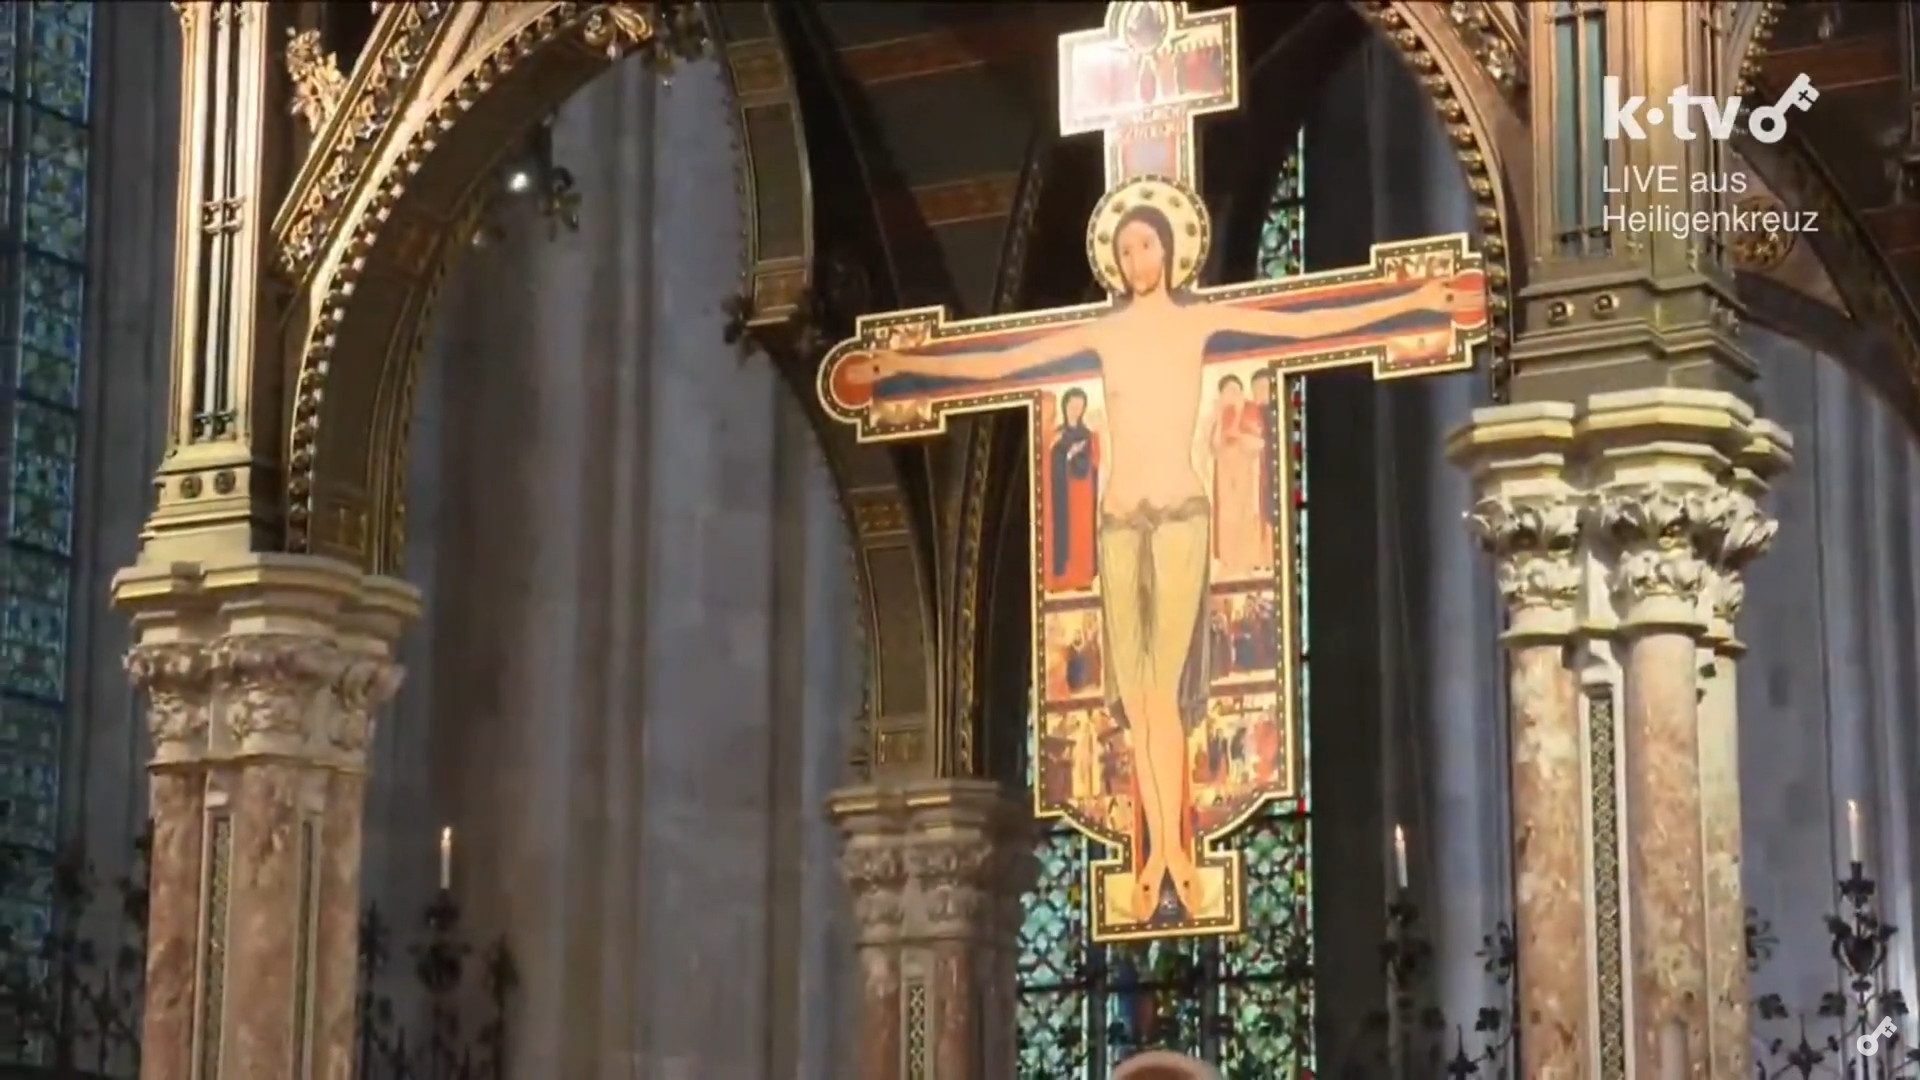 Live aus Heiligenkreuz: Pontifikalgottesdienst und Inaugurationsvortrag mit Kardinal Kasper